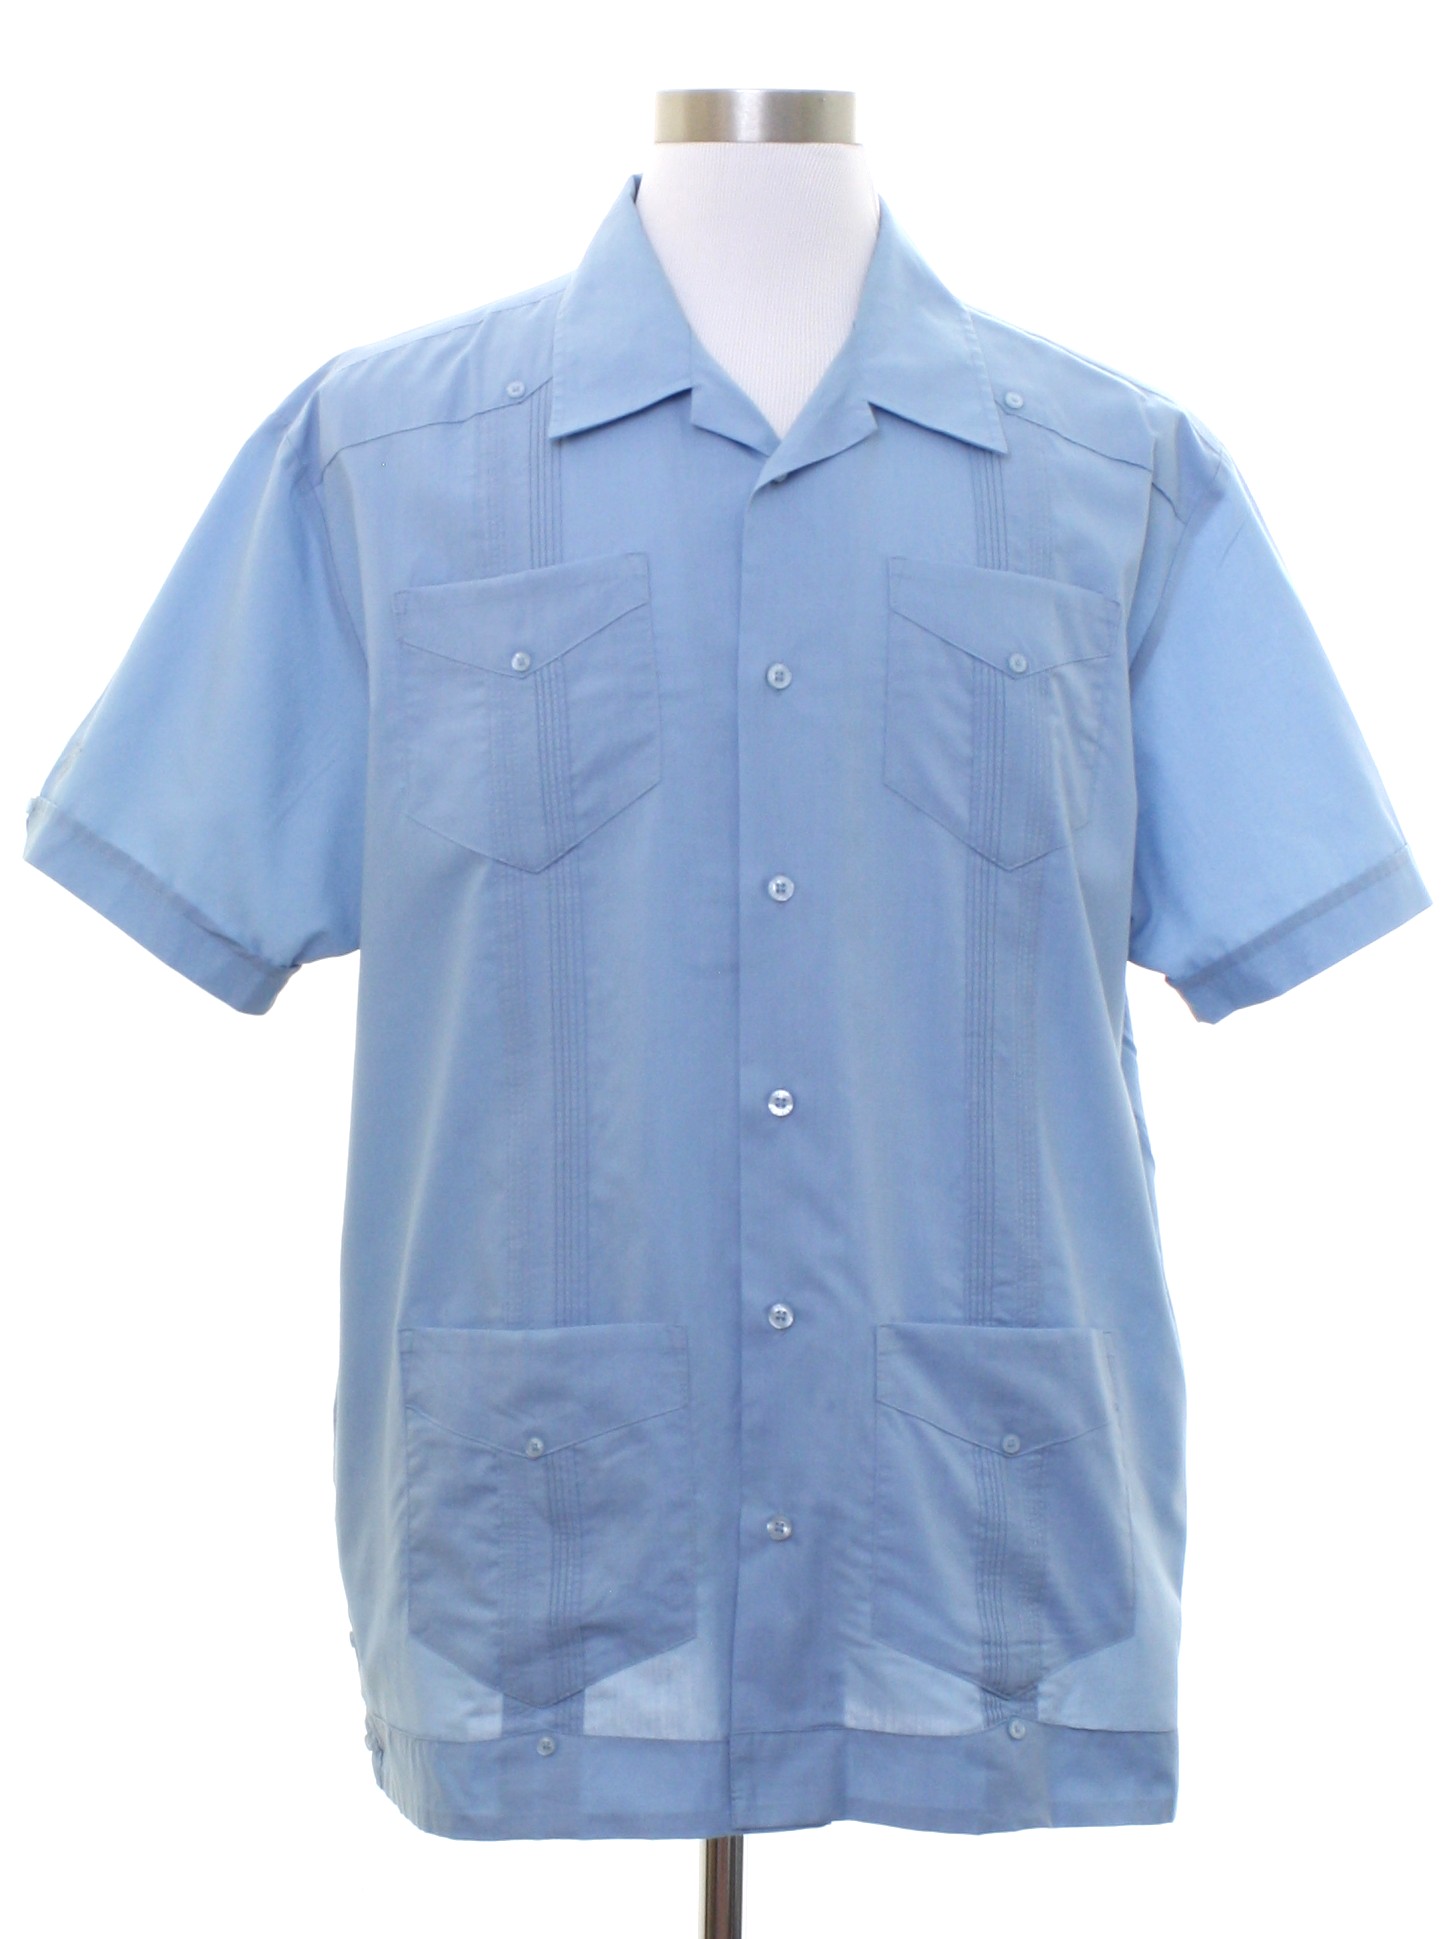 Guayabera Shirt: 90s -Cubavera- Mens light blue background polyester ...